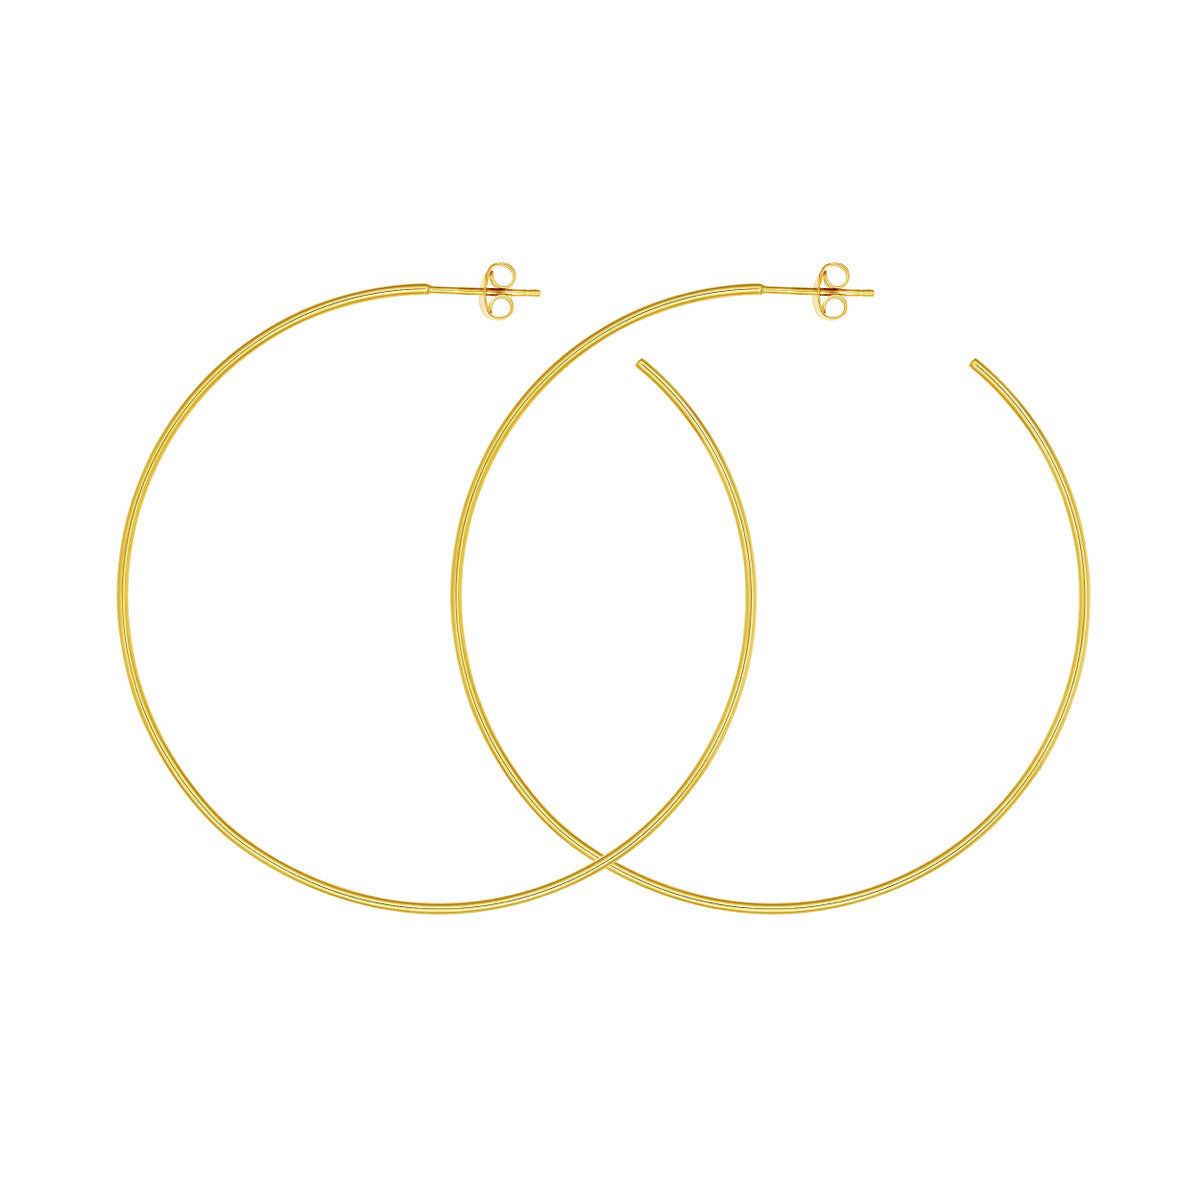 Large Gold Hoop Earrings 4690140